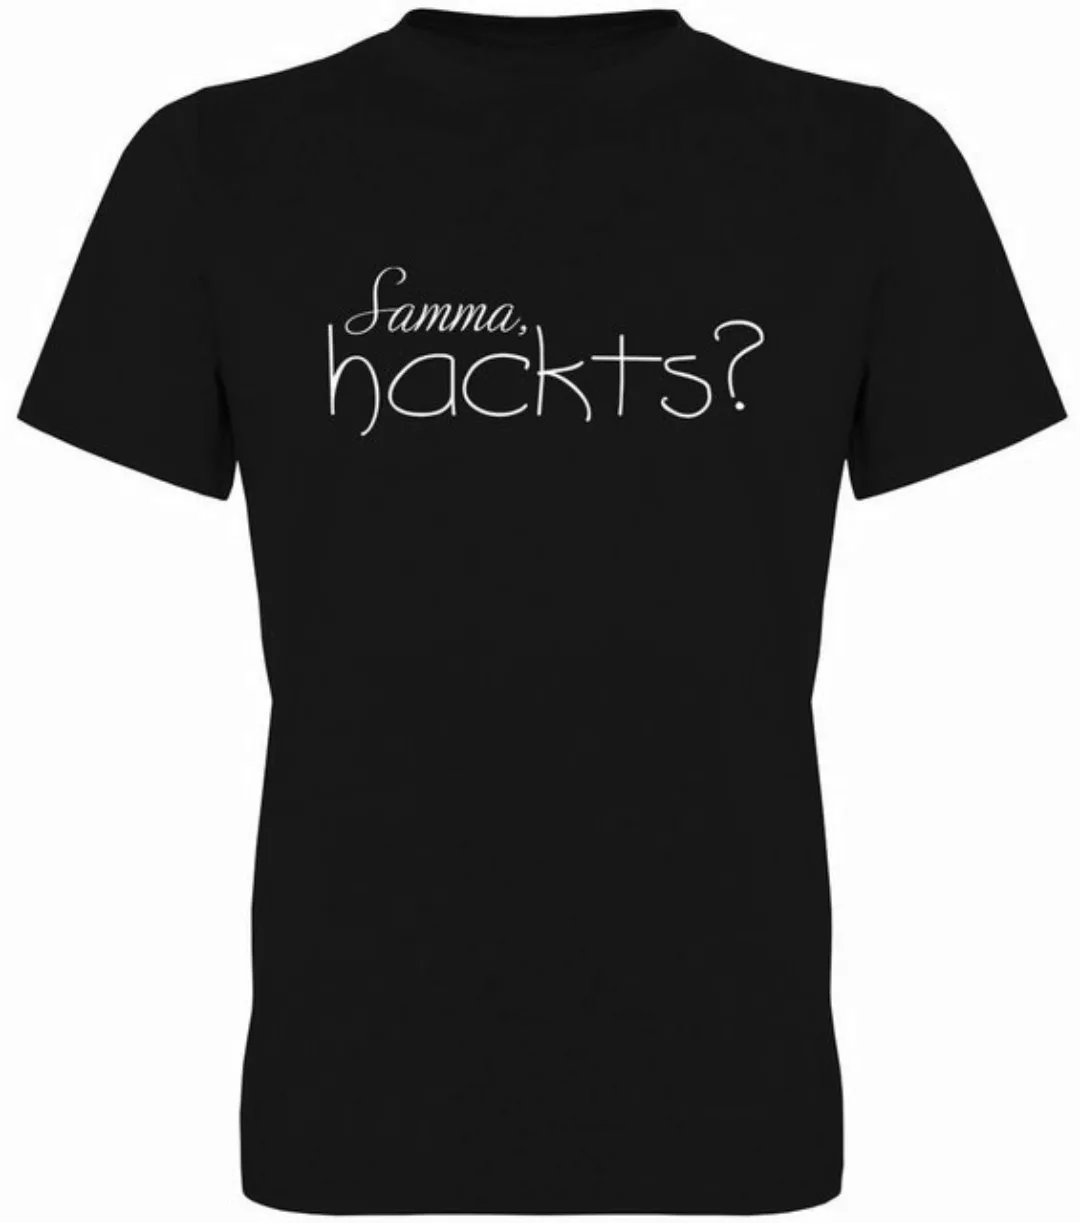 G-graphics T-Shirt Samma, hackts? Herren T-Shirt, mit Frontprint, mit Spruc günstig online kaufen